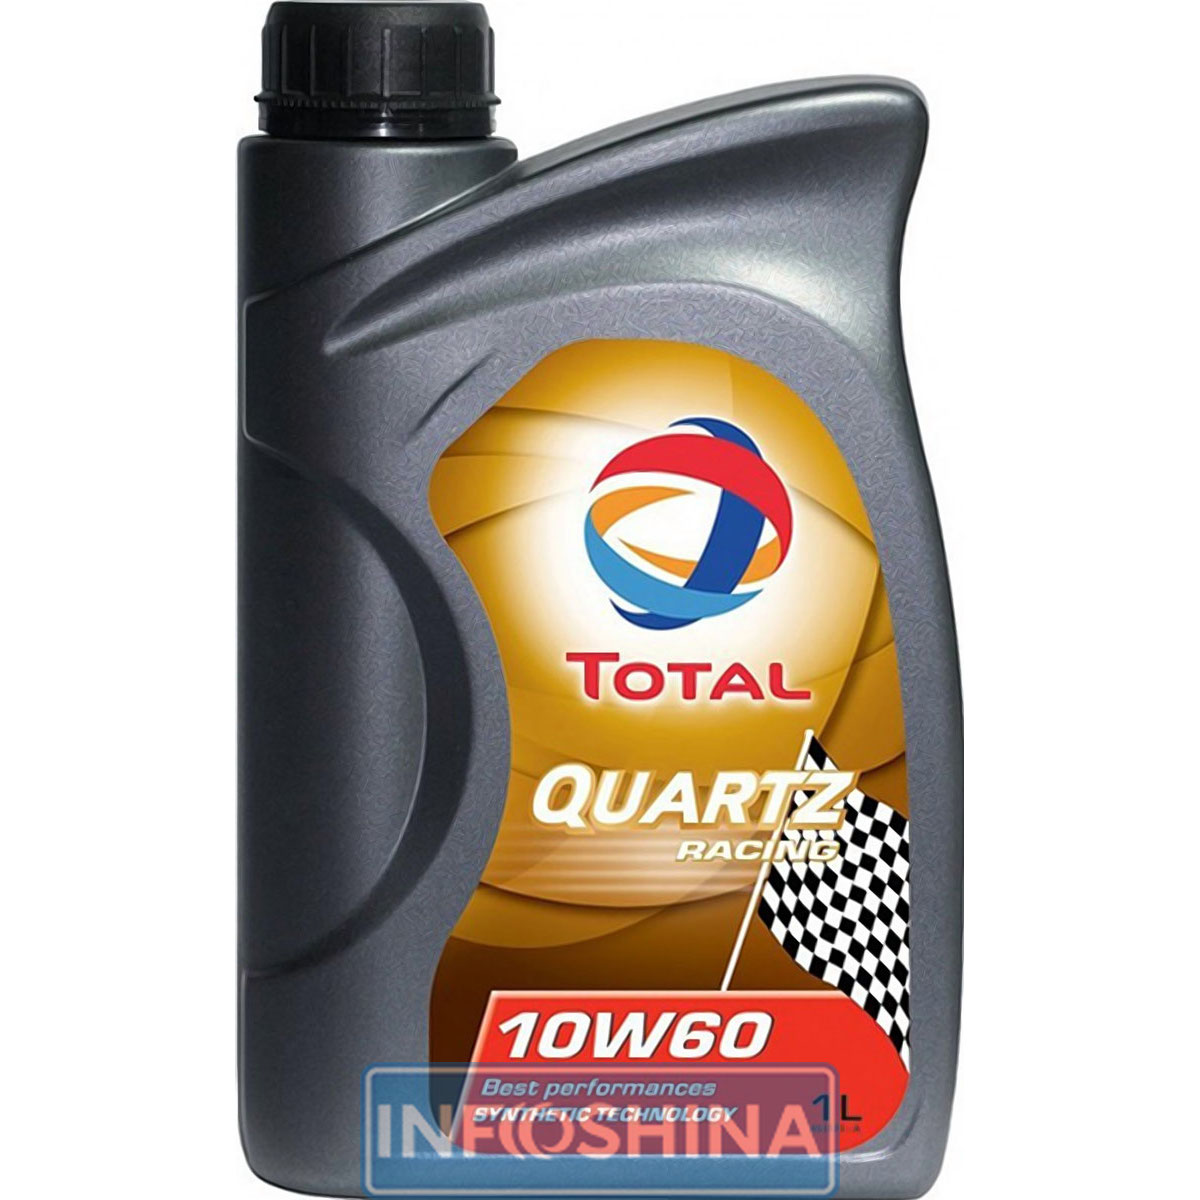 Total Quartz Racing 10W-60